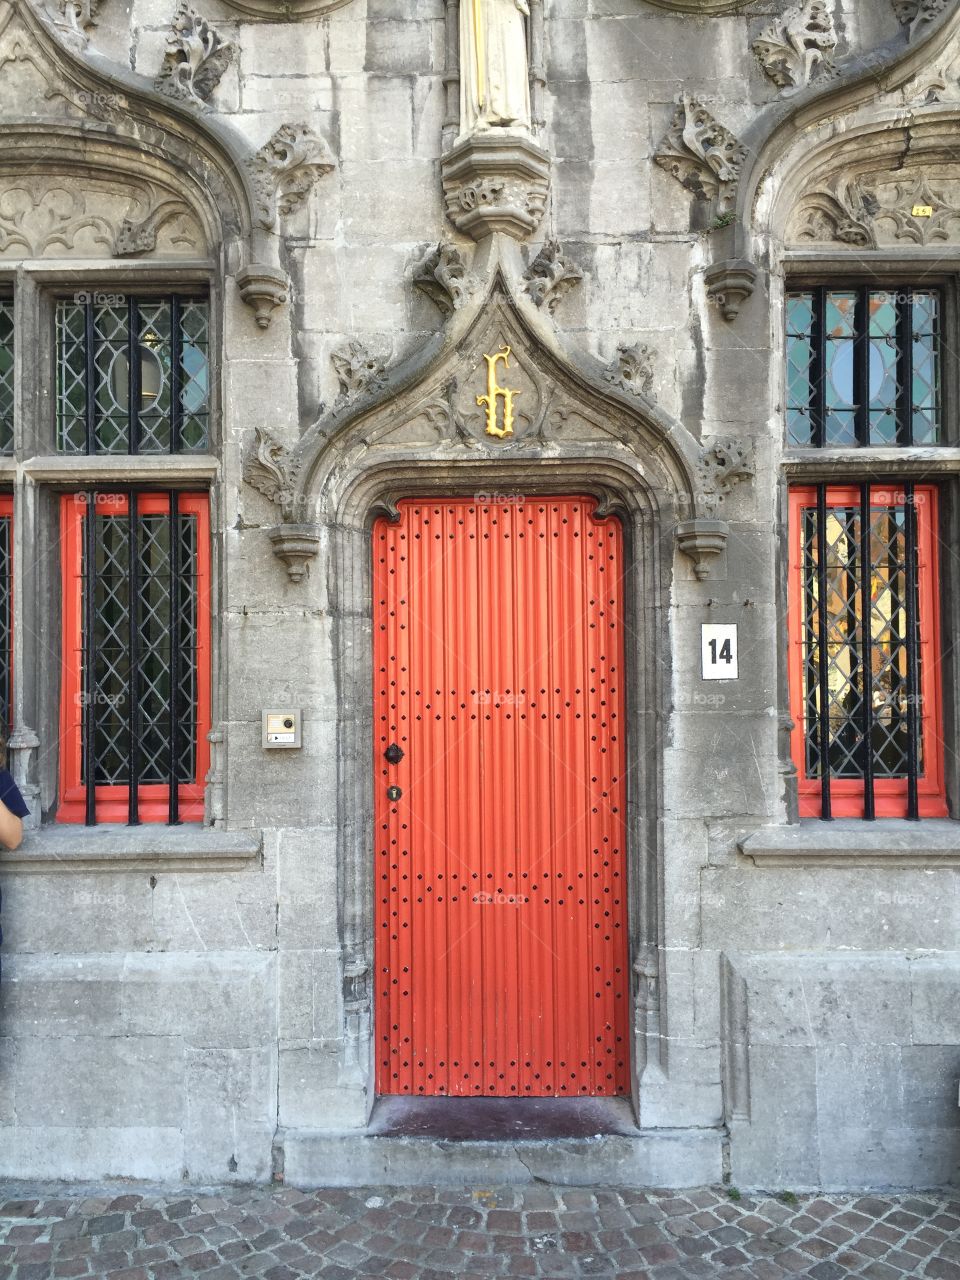 Orange Door
Bruges, Belgium